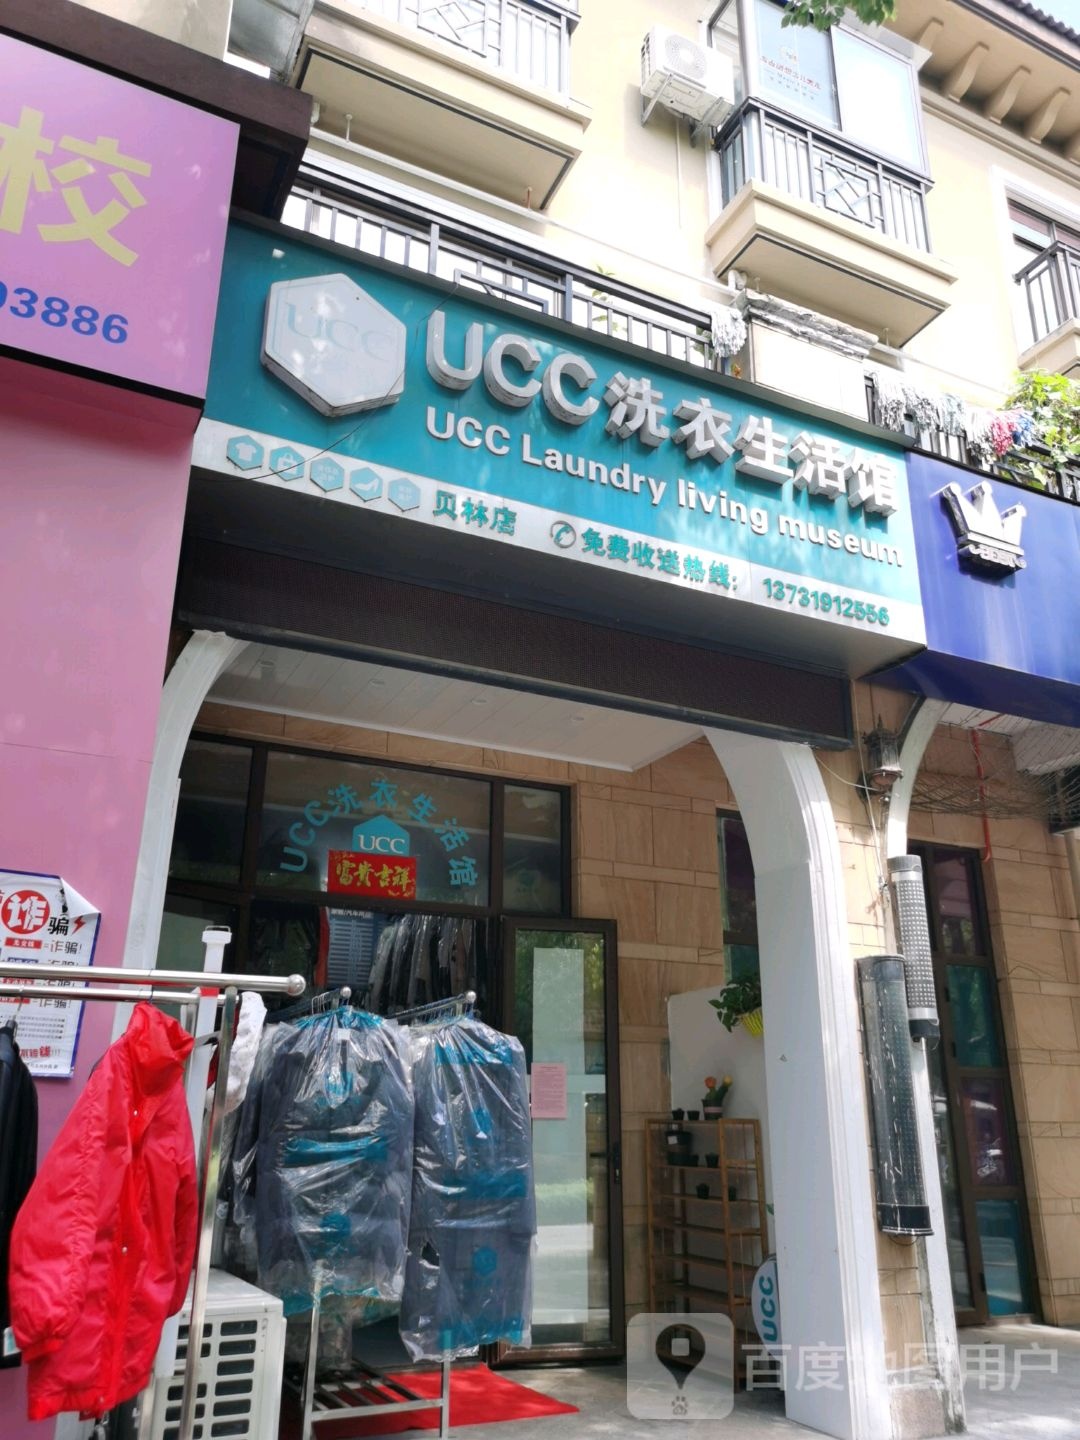 UCC洗衣生活馆(贝林电)